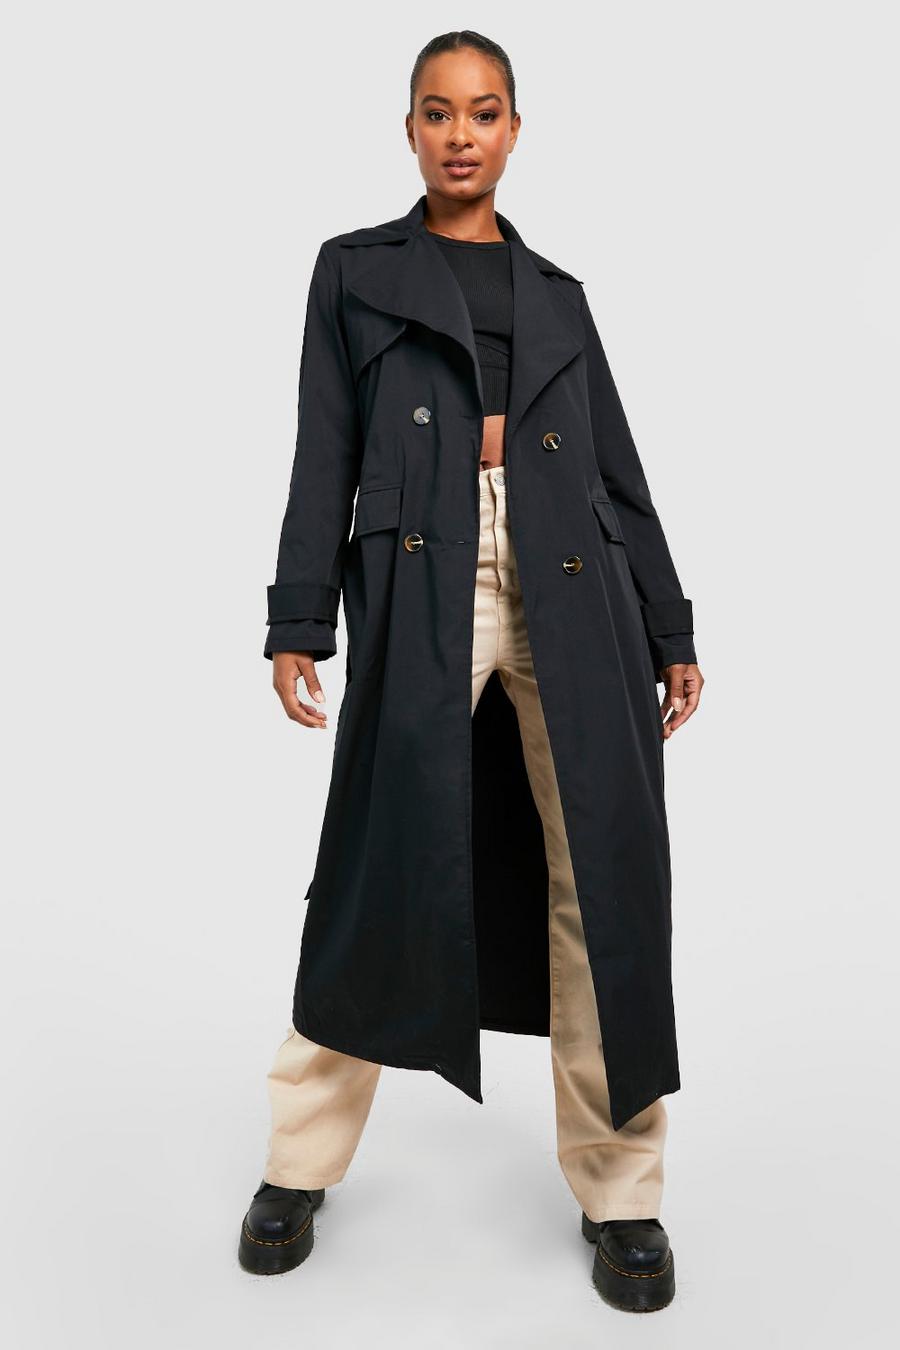 שחור מעיל טרנץ' אוברסייז עם חגורה, לנשים גבוהות image number 1